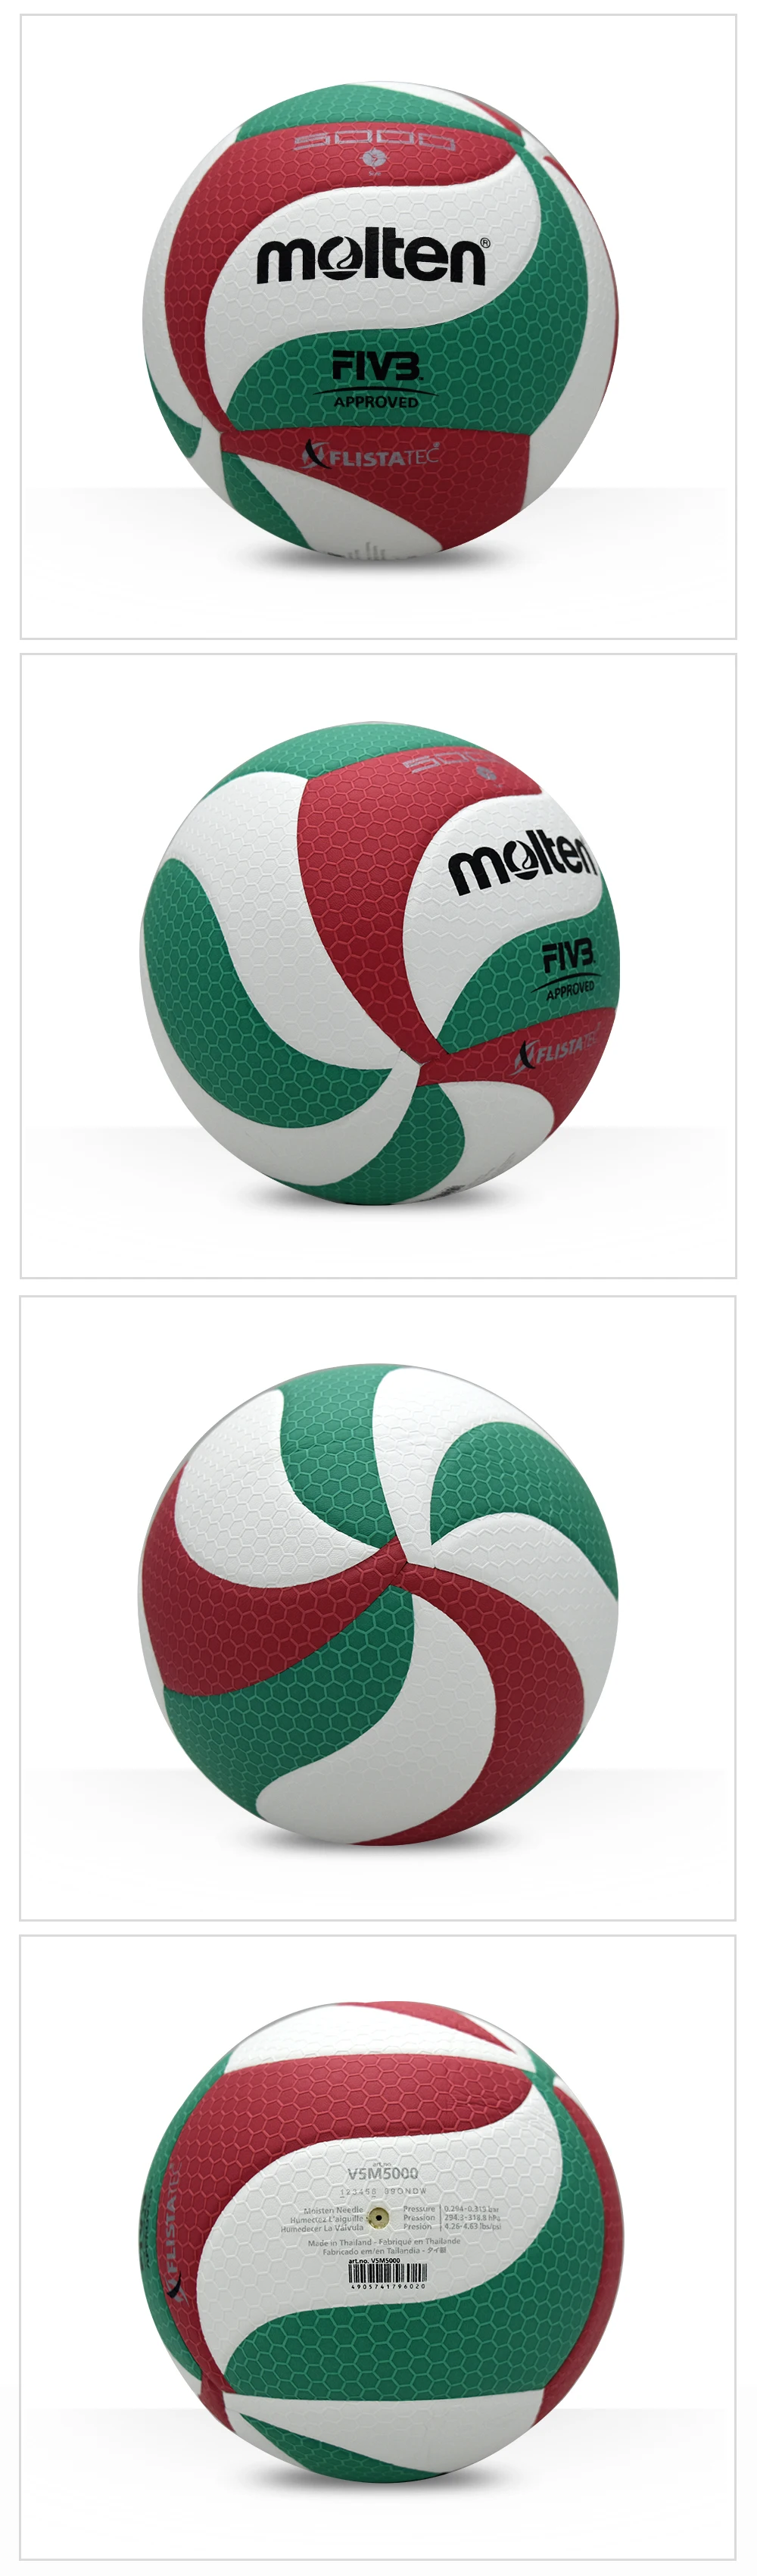 Оригинальный Волейбольный мяч V5M5000 новый бренд высокое качество натуральной расплавленный PU Материал официальный Размеры 5 волейбол